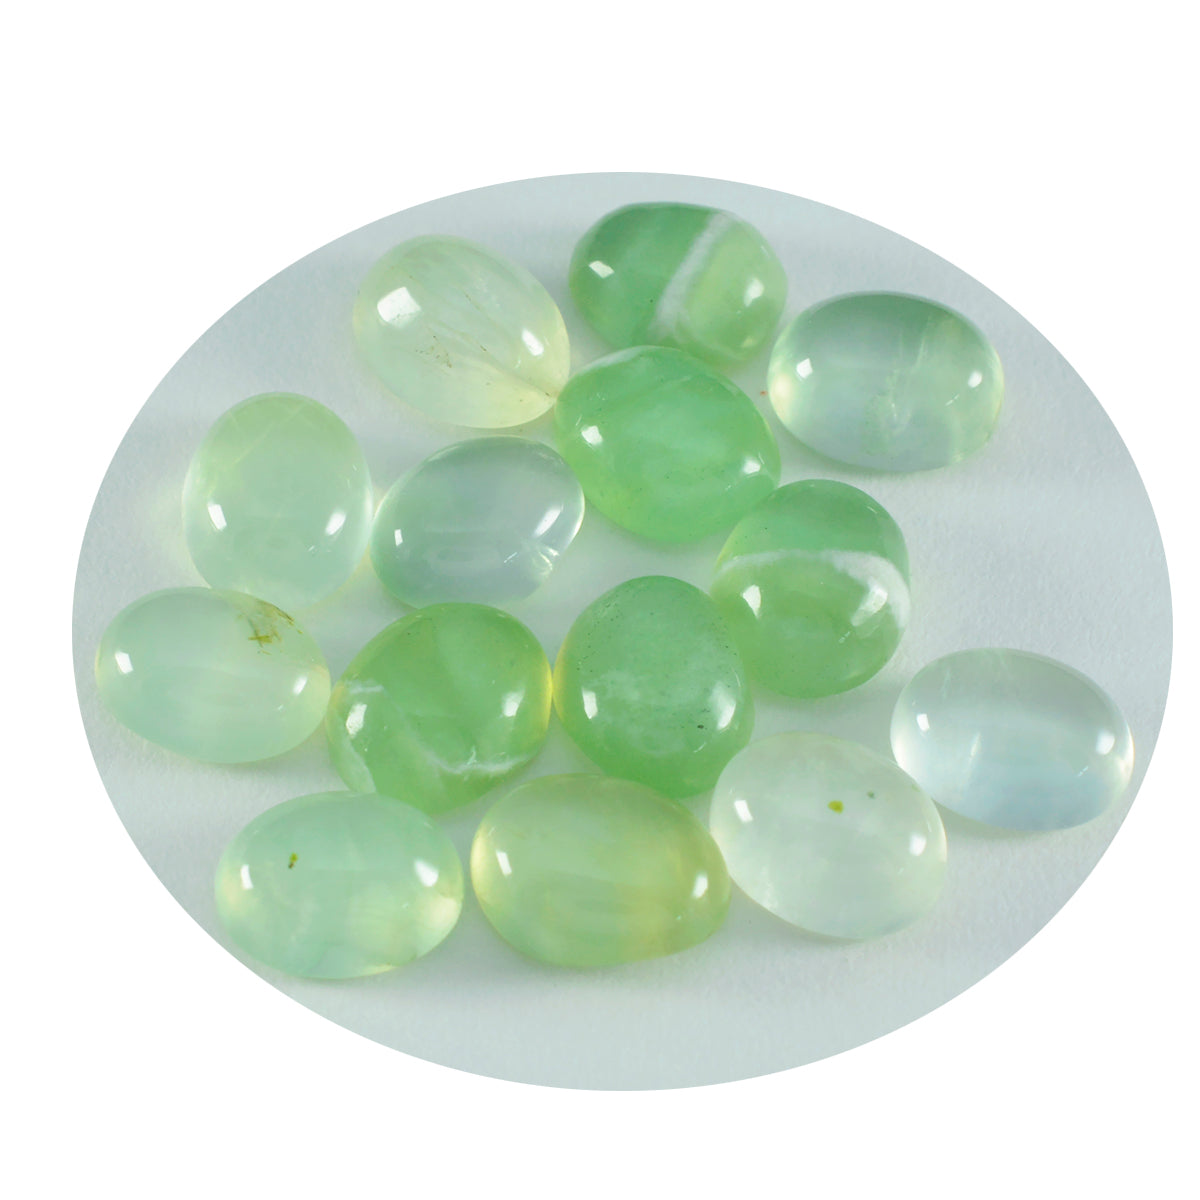 riyogems 1 pieza cabujón de prehnita verde 8x10 mm forma ovalada A+1 piedra preciosa suelta de calidad